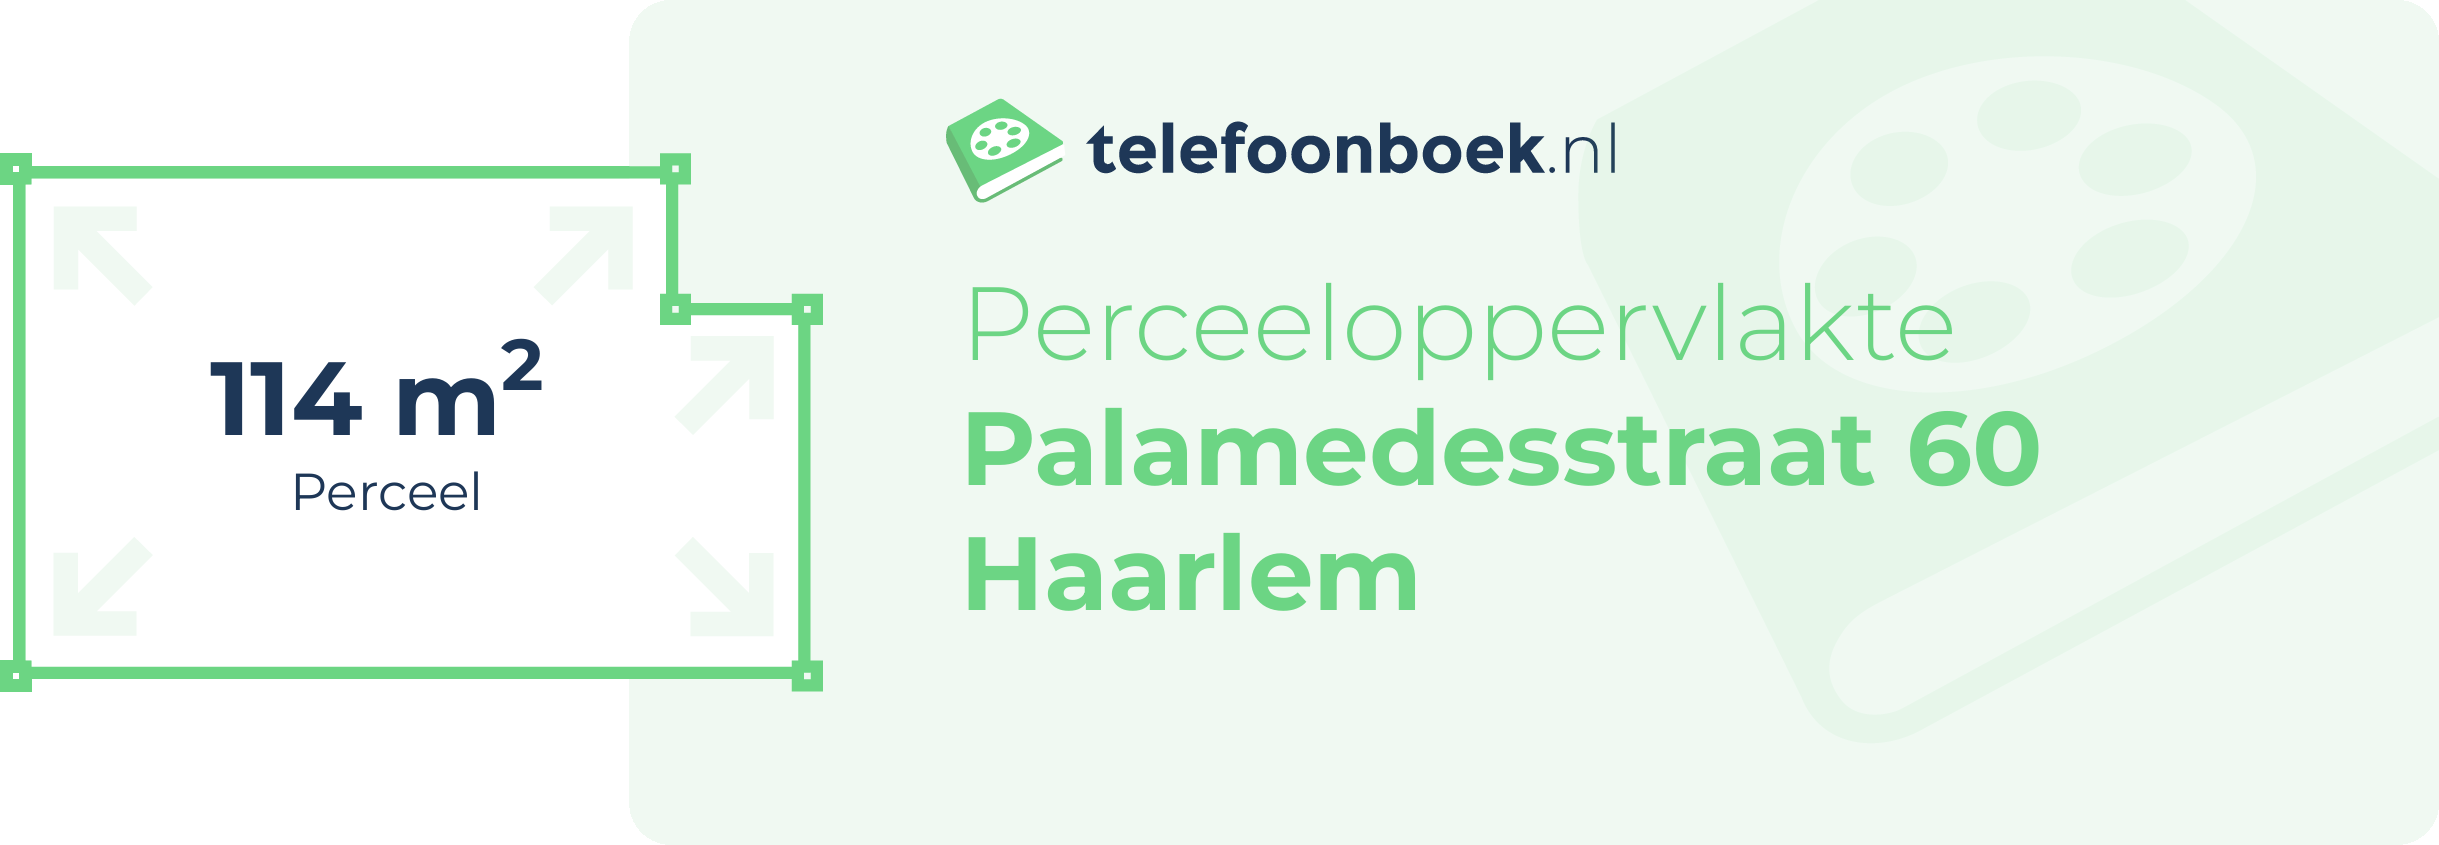 Perceeloppervlakte Palamedesstraat 60 Haarlem